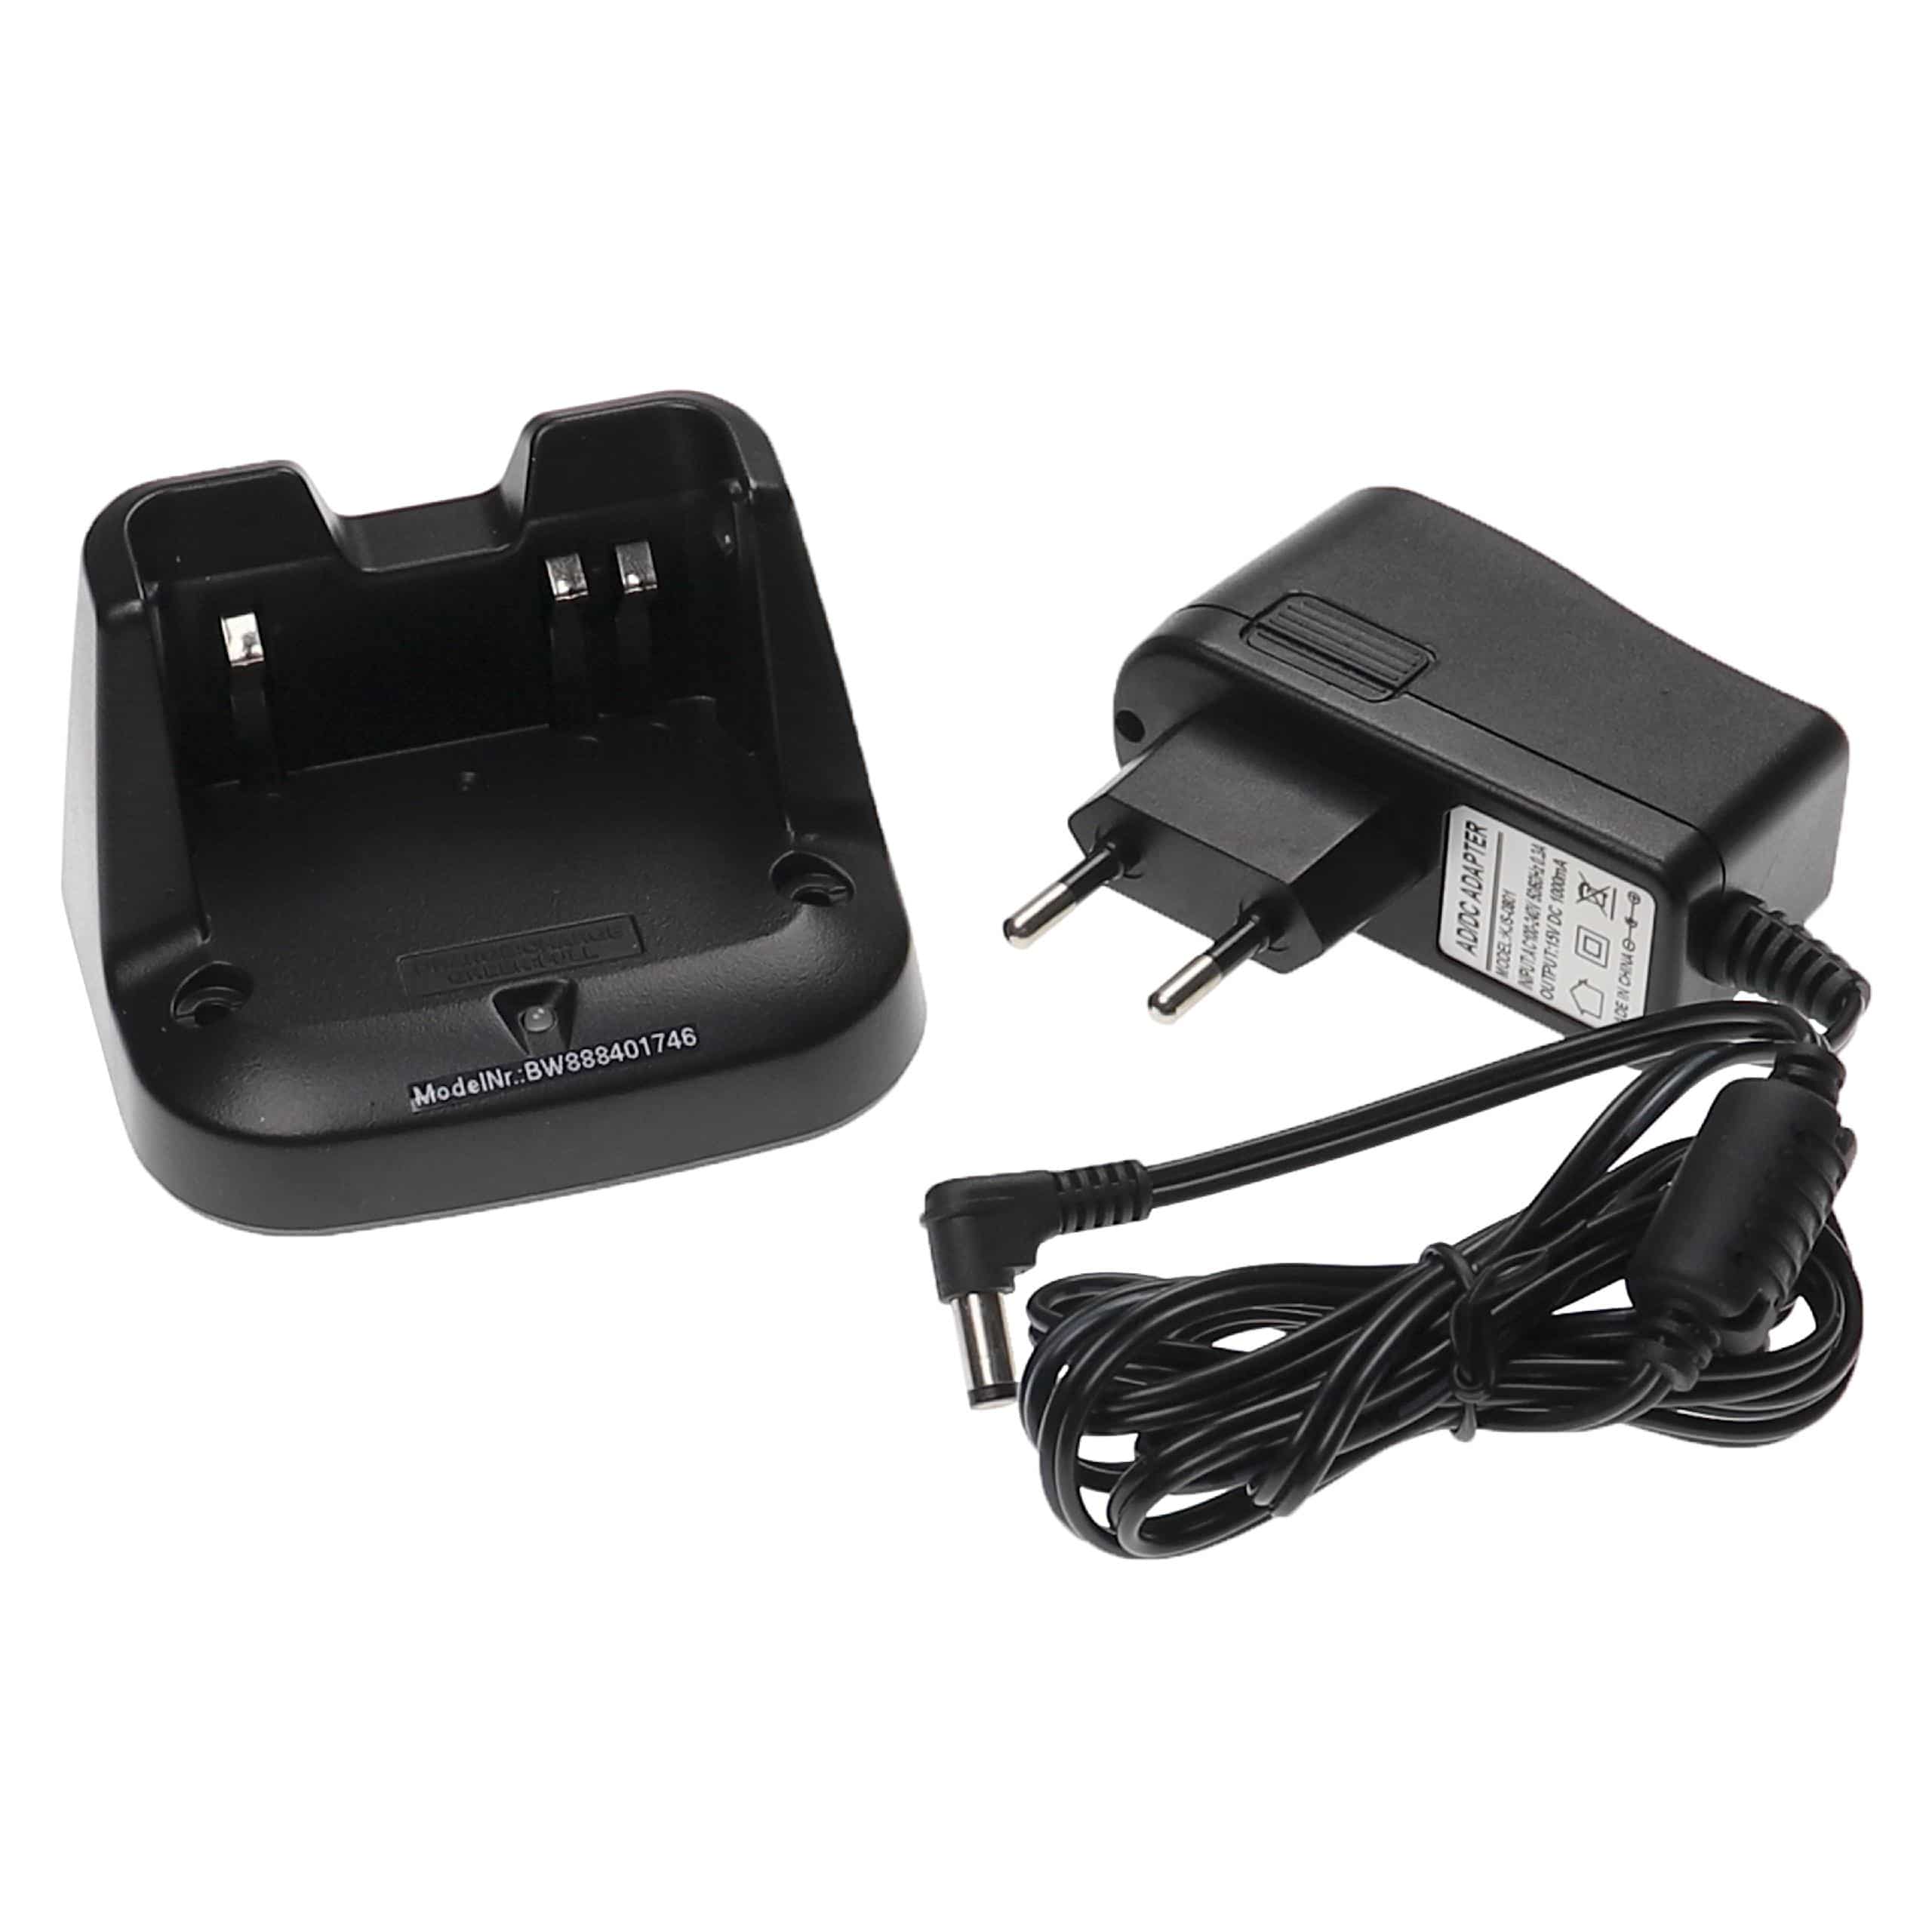 Chargeur + cordon pour batterie de radio IC-3101 - 15 V, 1,0 A